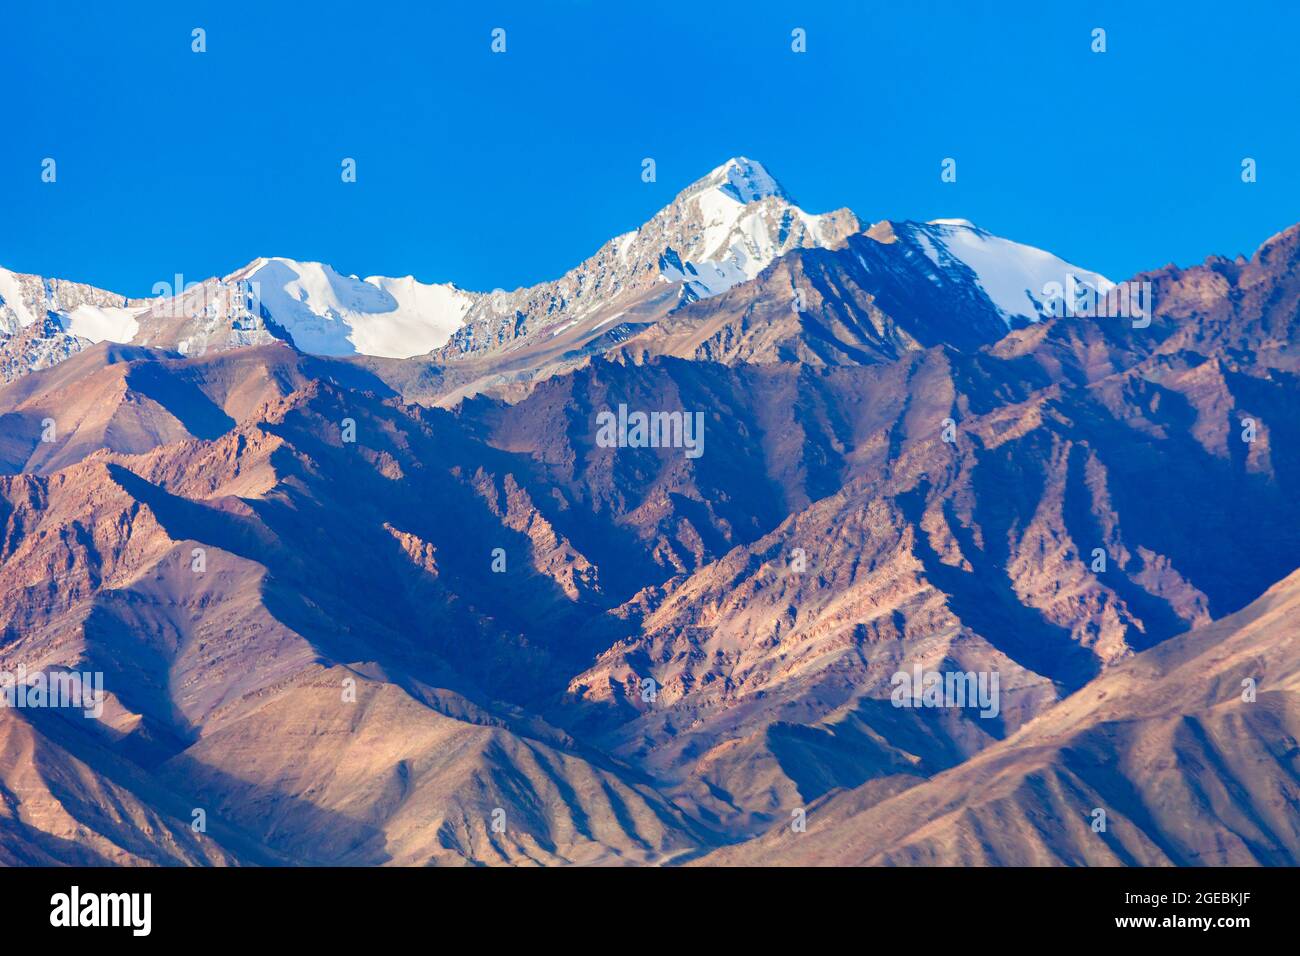 Stok Kangri est la plus haute montagne de la chaîne de Stok De l'Himalaya près de Leh dans la région du Ladakh de inde du nord Banque D'Images